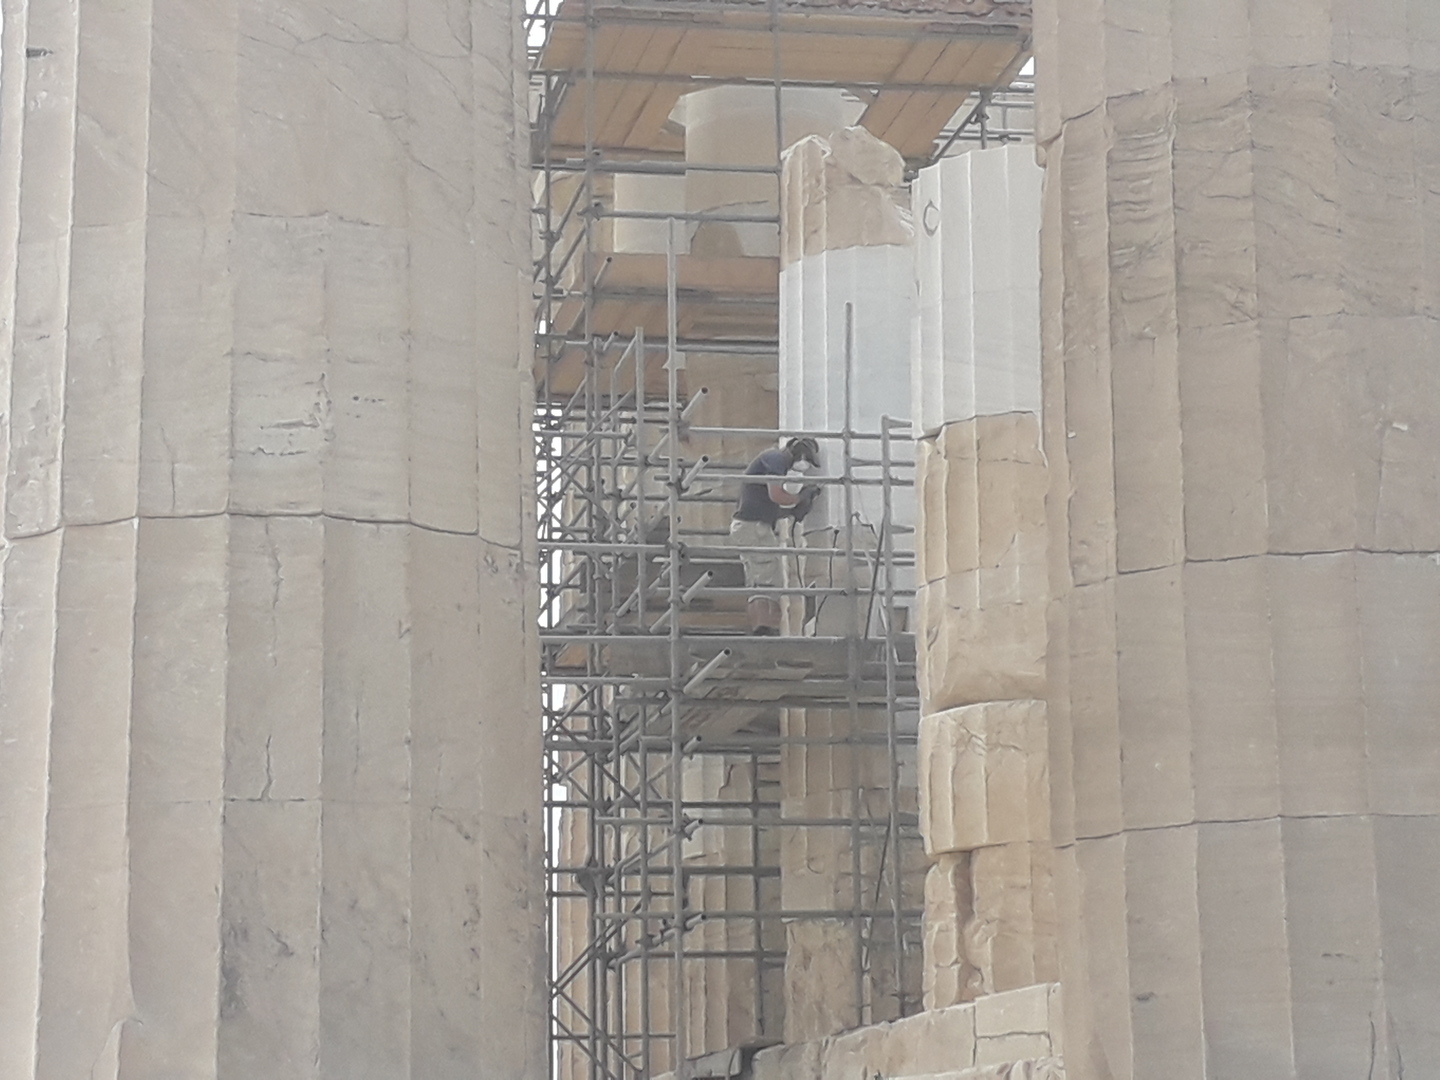 Ouvrier sur un échaffaudage entrain de restaurer des colonnes